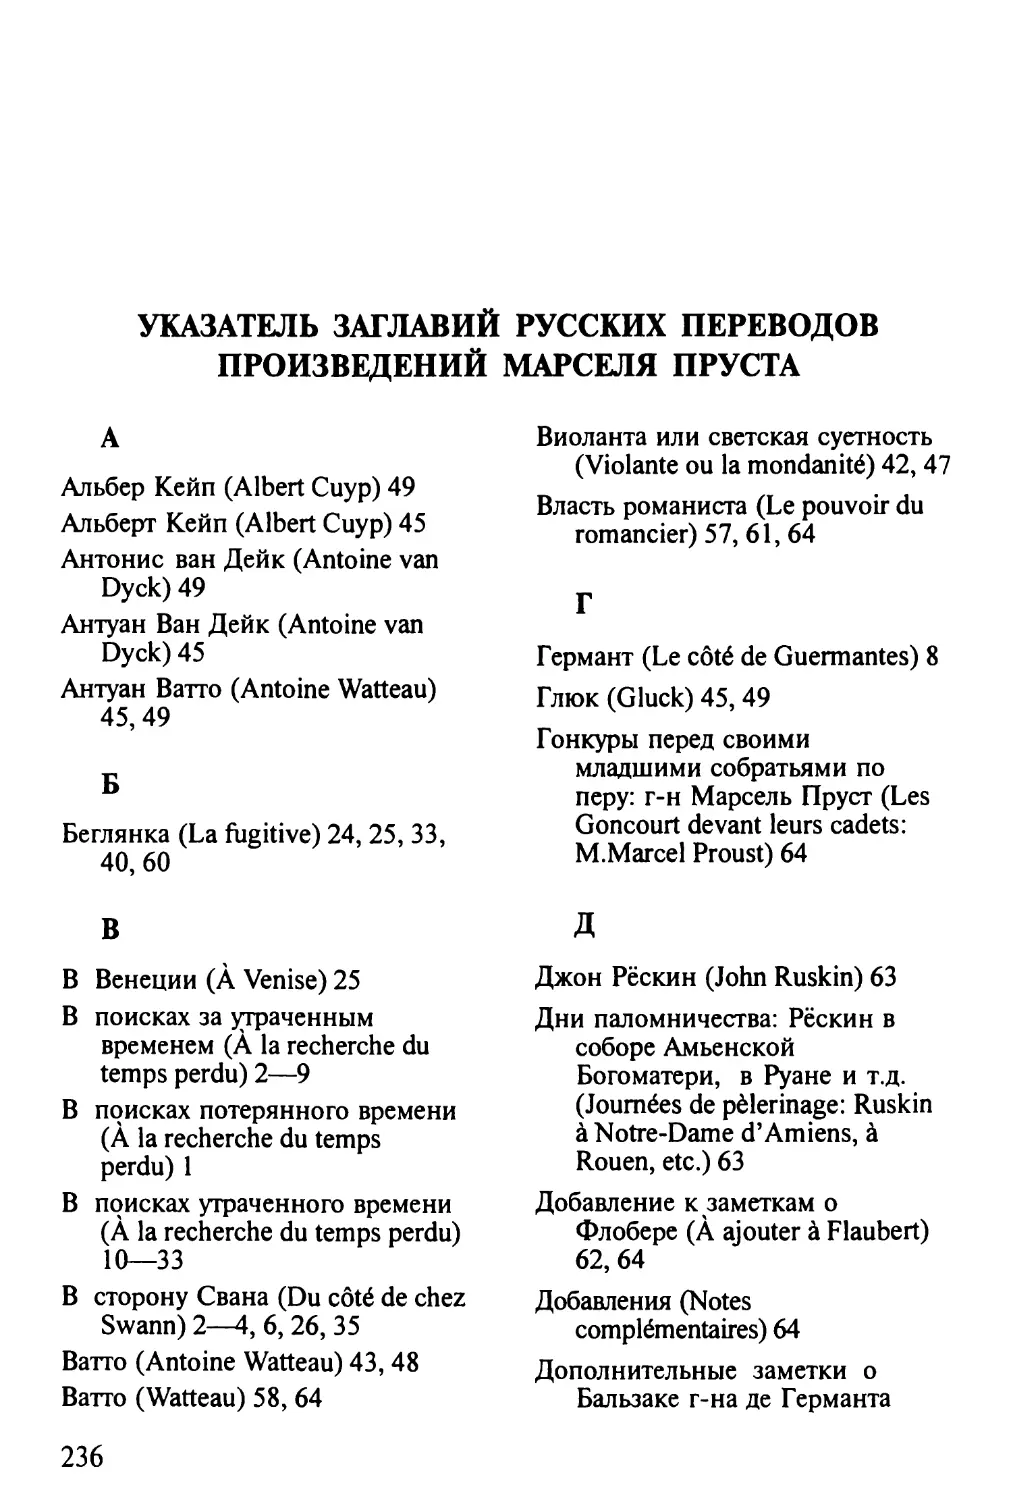 Указатель заглавий русских переводов произведений М.Пруст